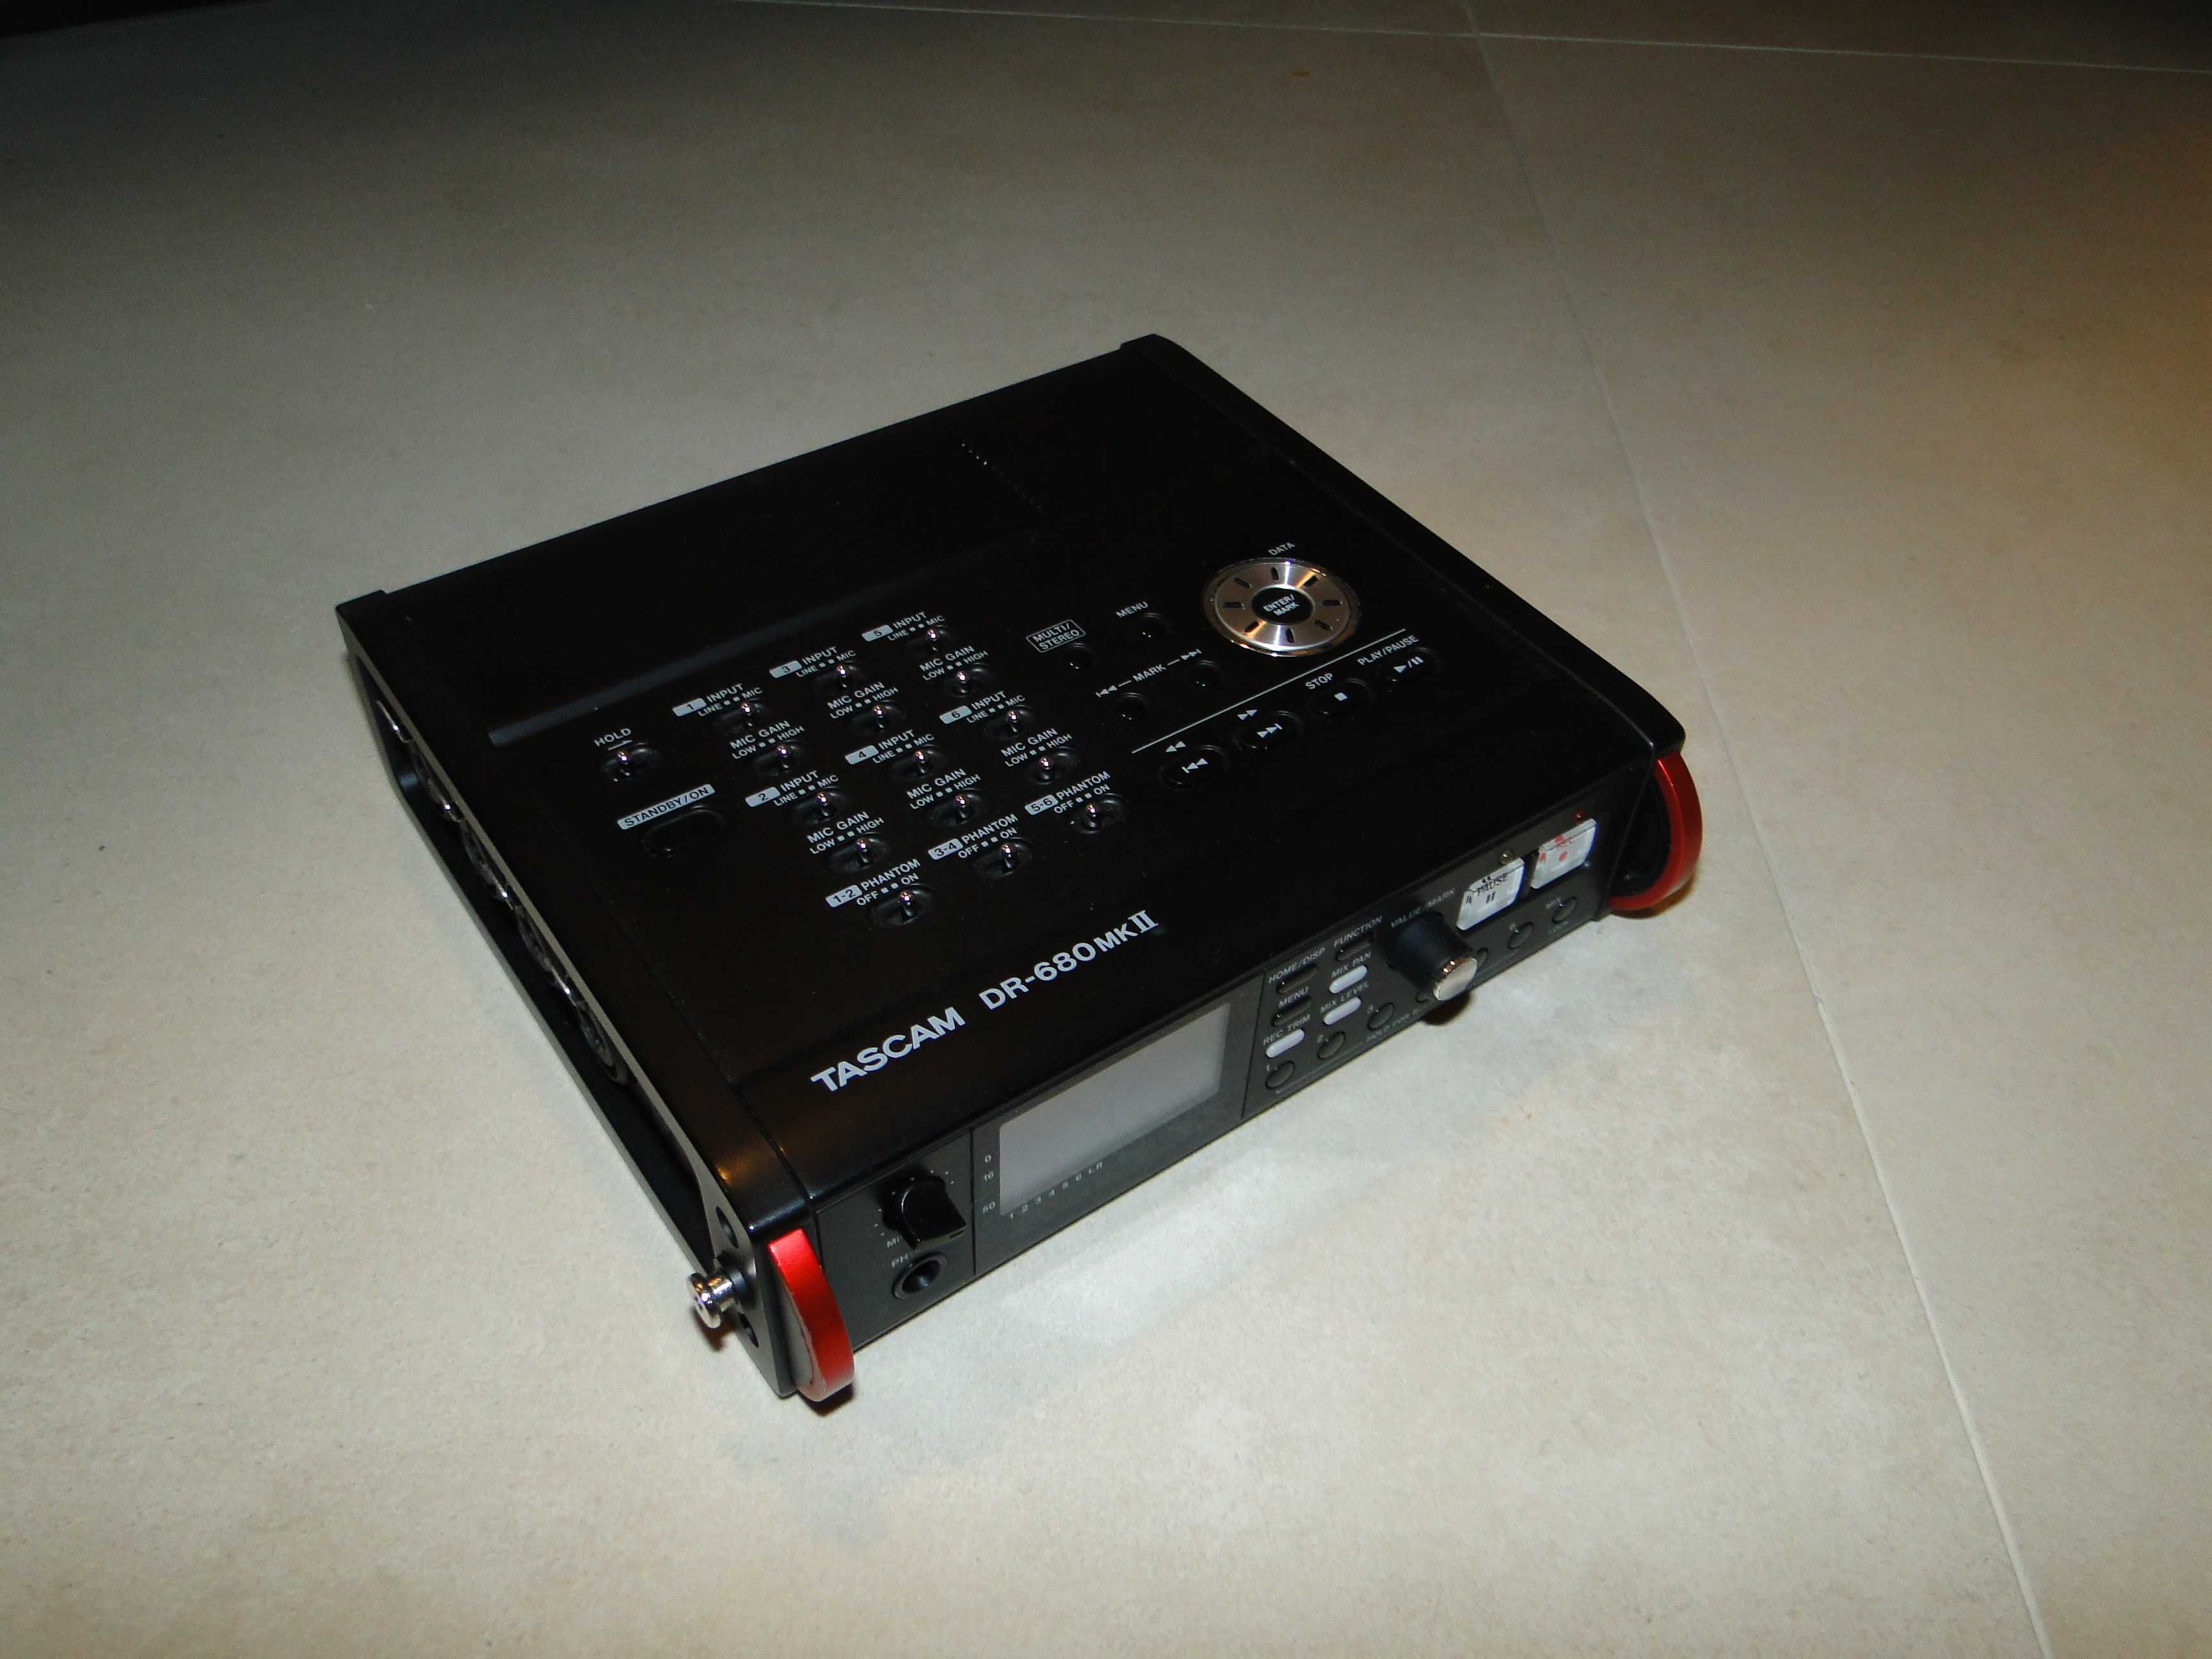 Zawodowy 8 Ścieżkowy Rejestrator Audio TASCAM DR-680 MK2.Nówka.Okazja